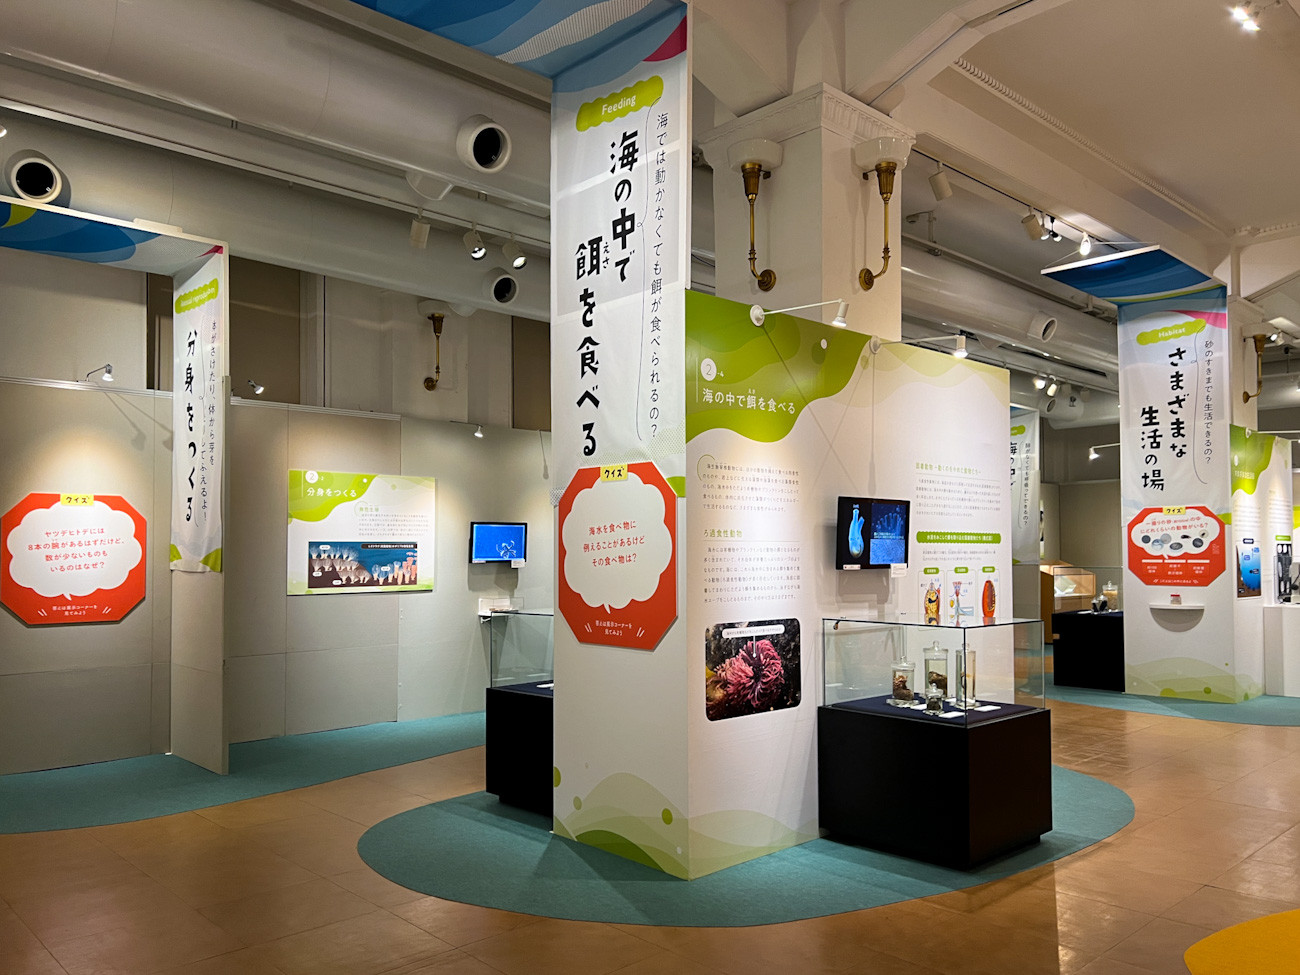  国立科学博物館 日本館1階 企画展「知られざる海生無脊椎動物の世界」会場